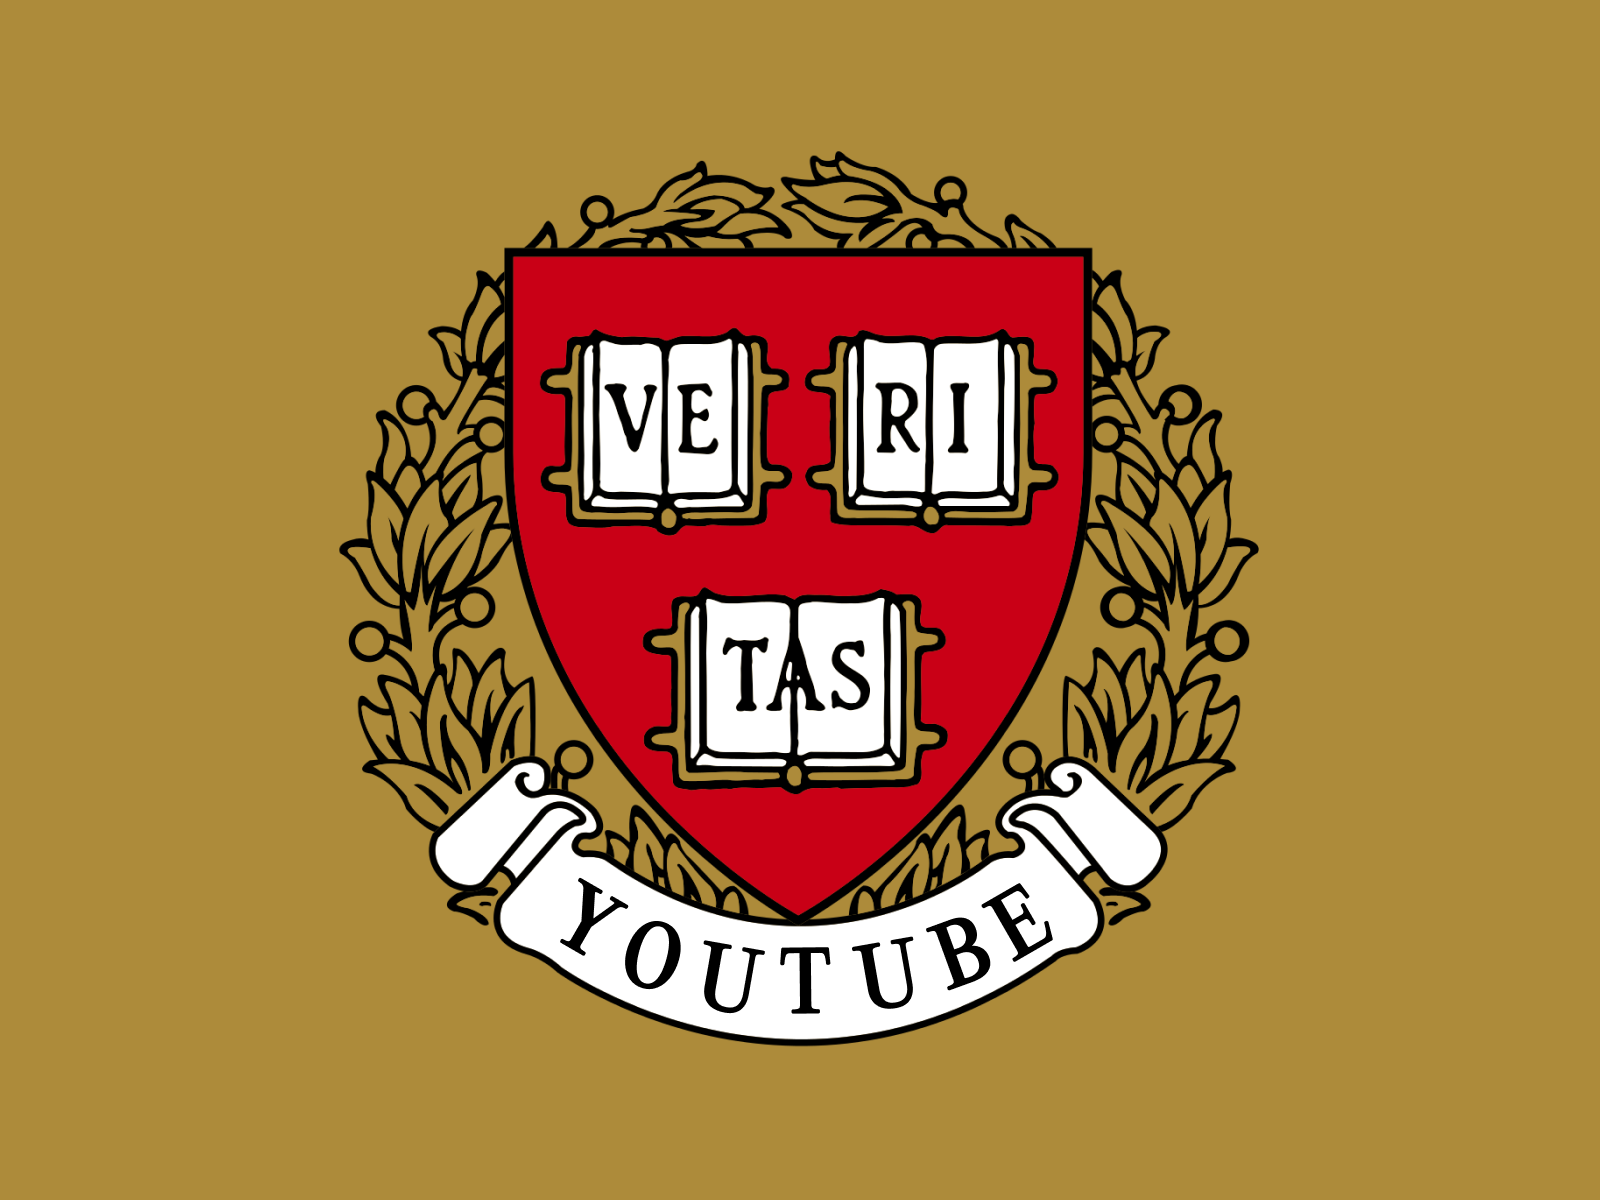 Youtube university